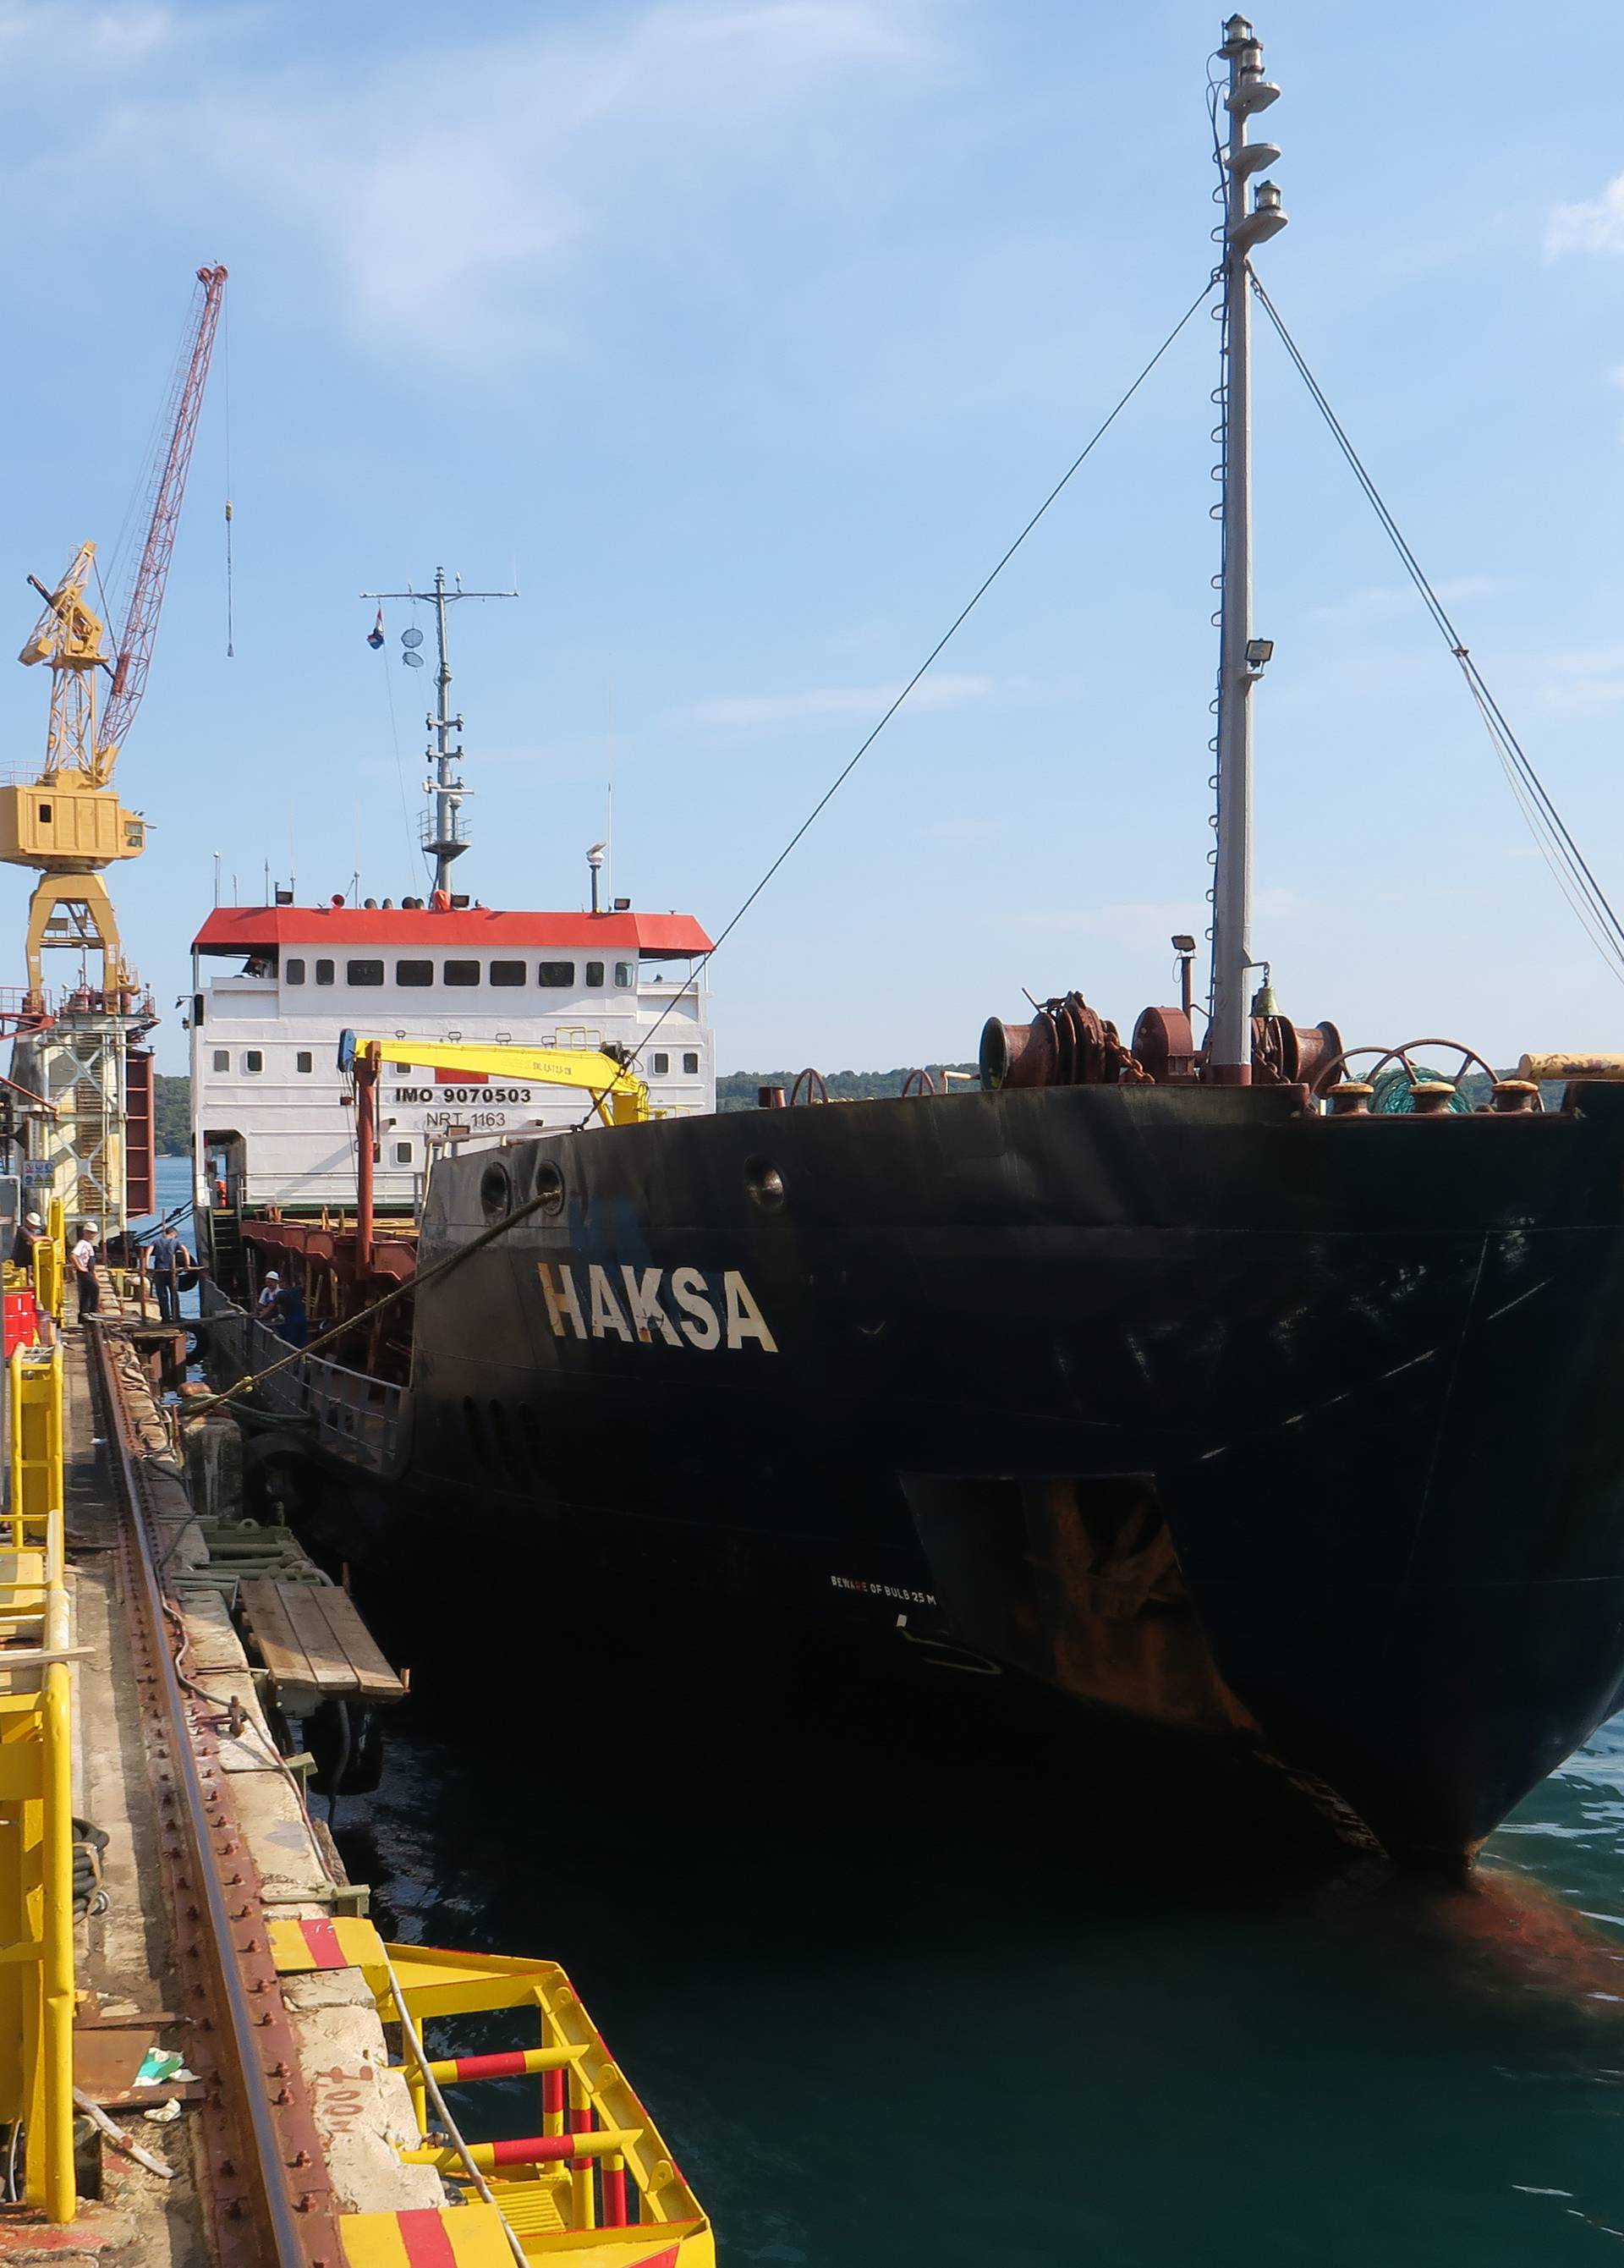 Brod Haksa u Šibeniku: Ljetos je počeo tonuti pokraj Jabuke